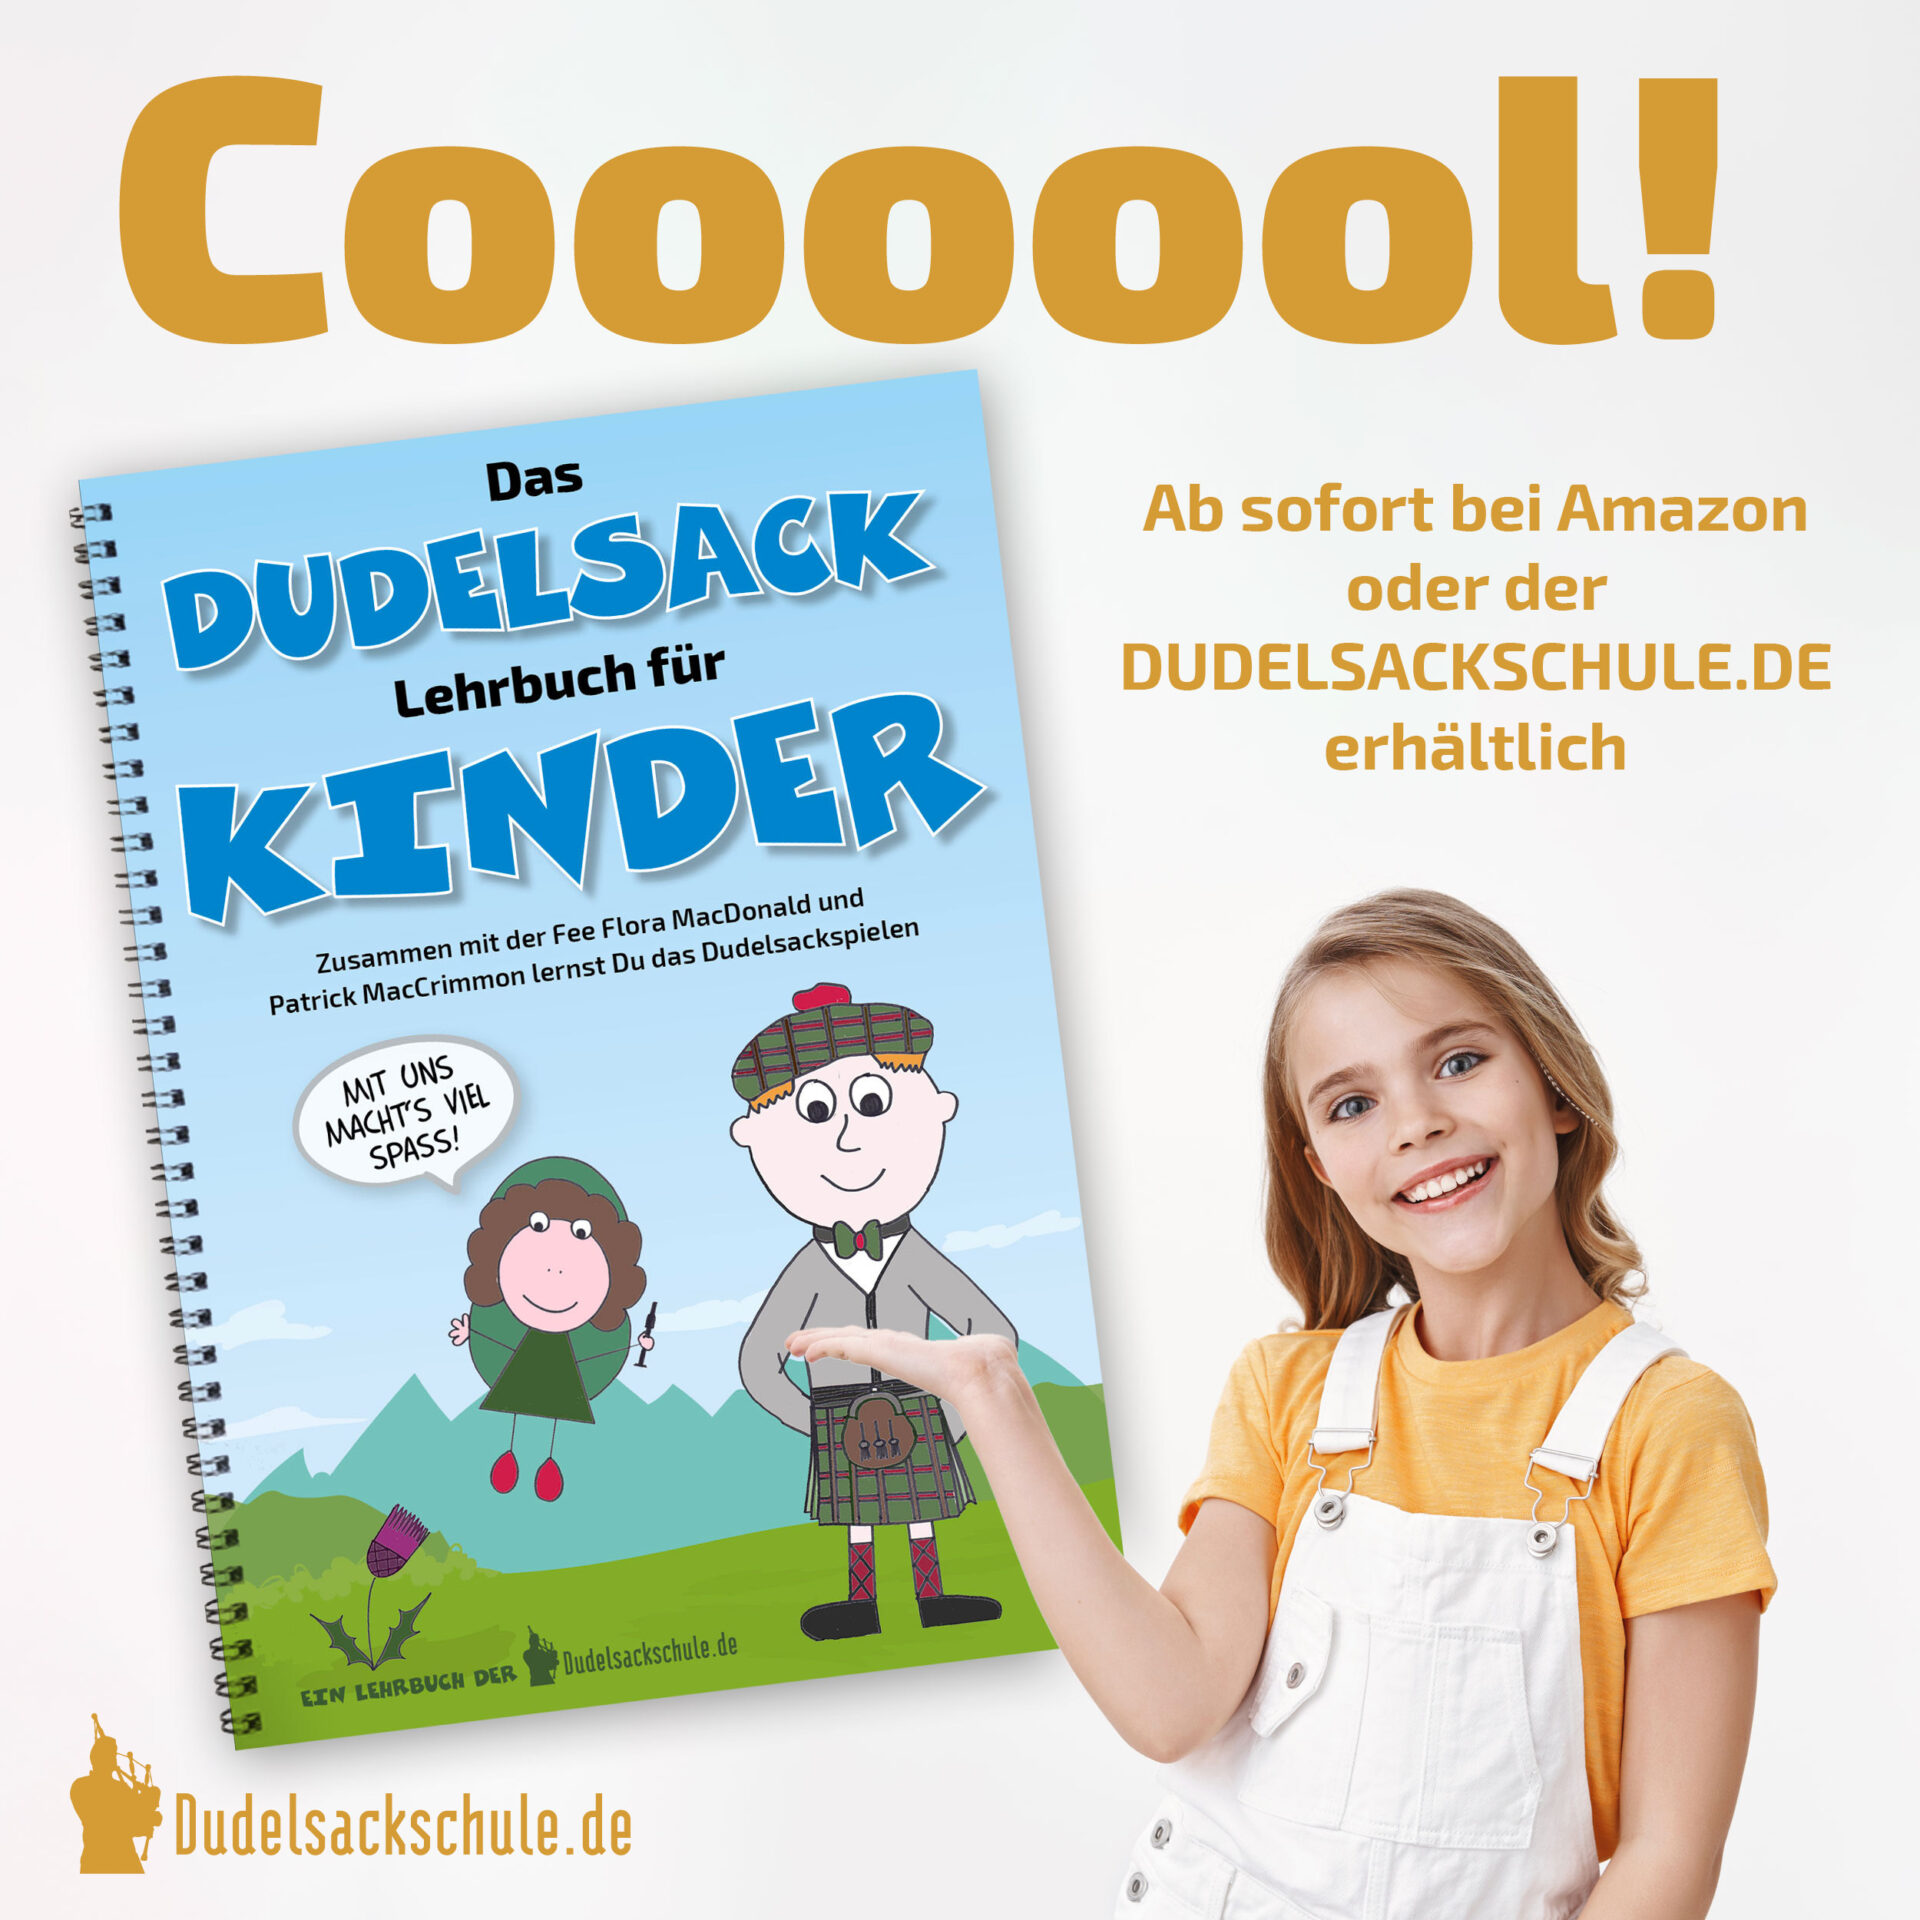 Kinder-Dudelsack-Starter-Set-7